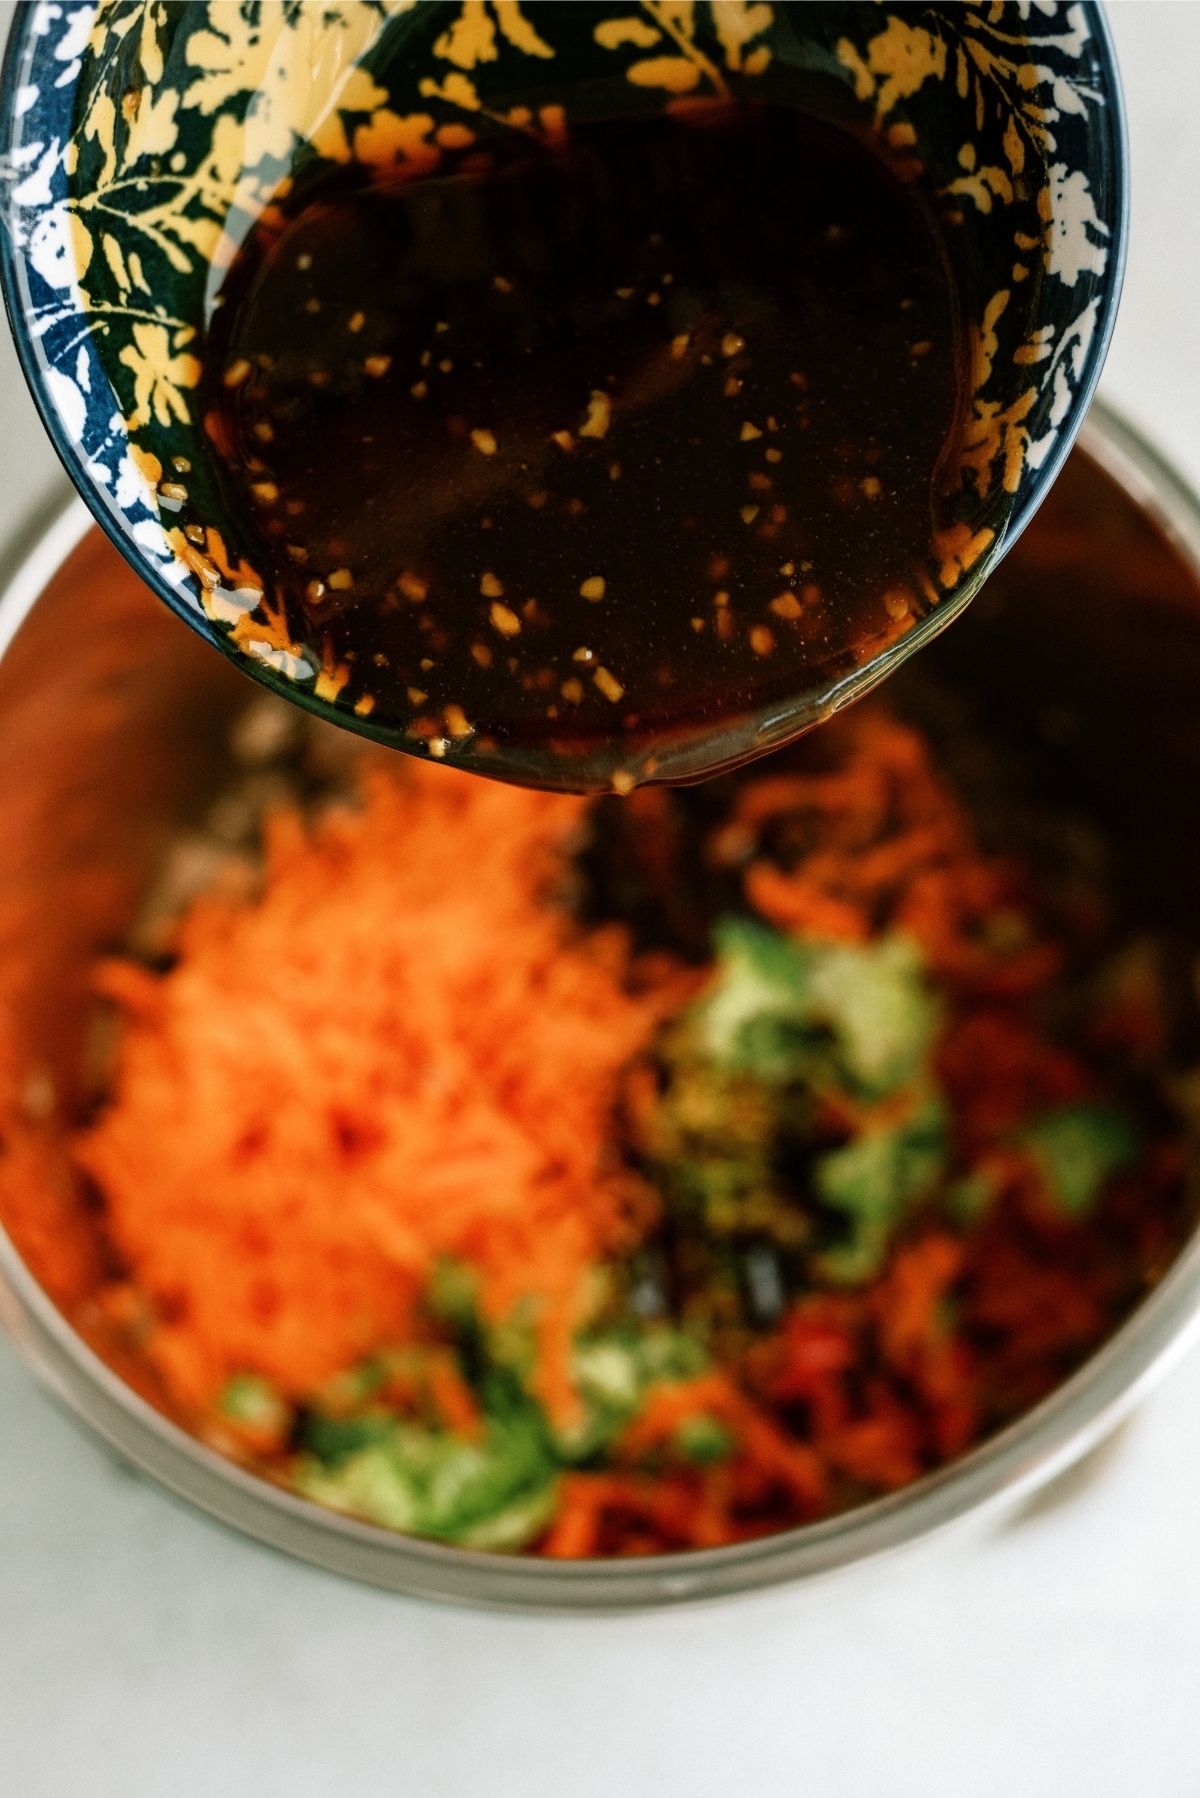 Pouring Teriyaki Sauce onto veggies in Instant Pot